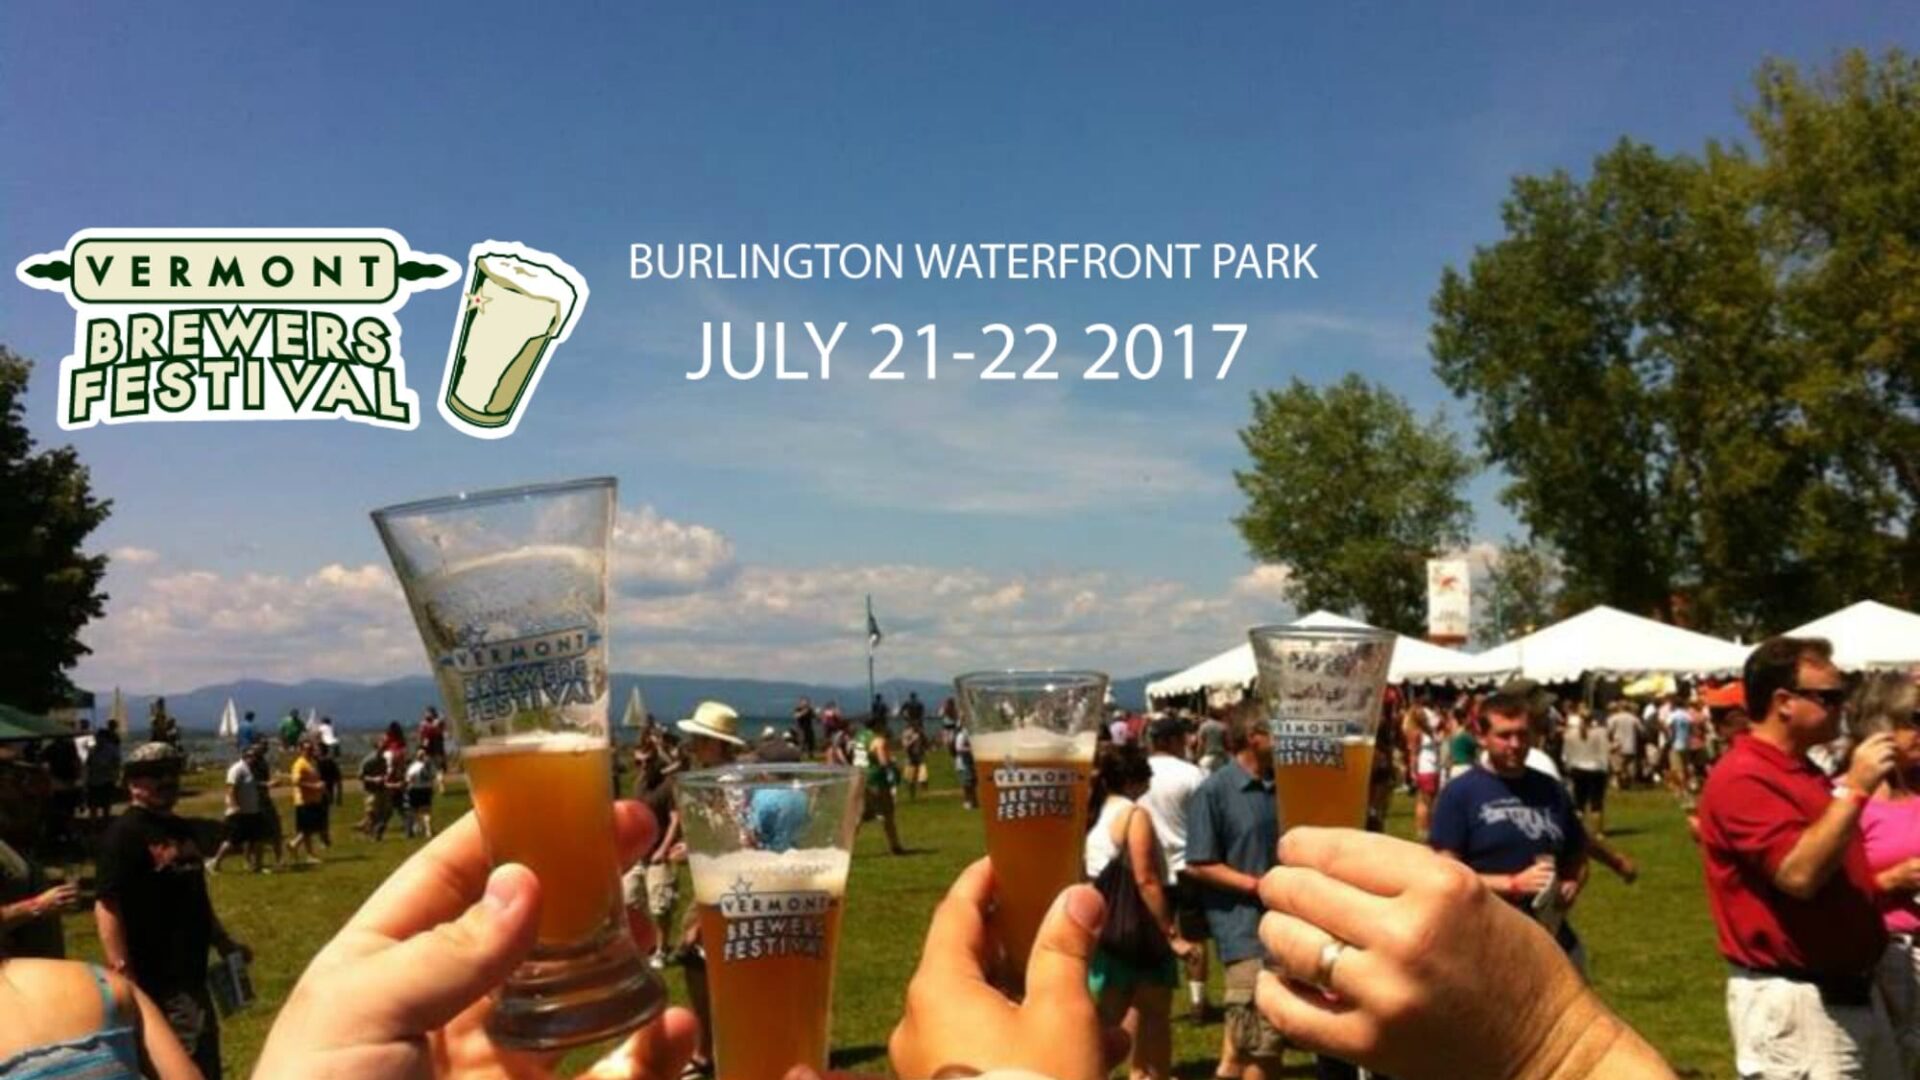 Vermont beer festivals 2017|vermont beer festival